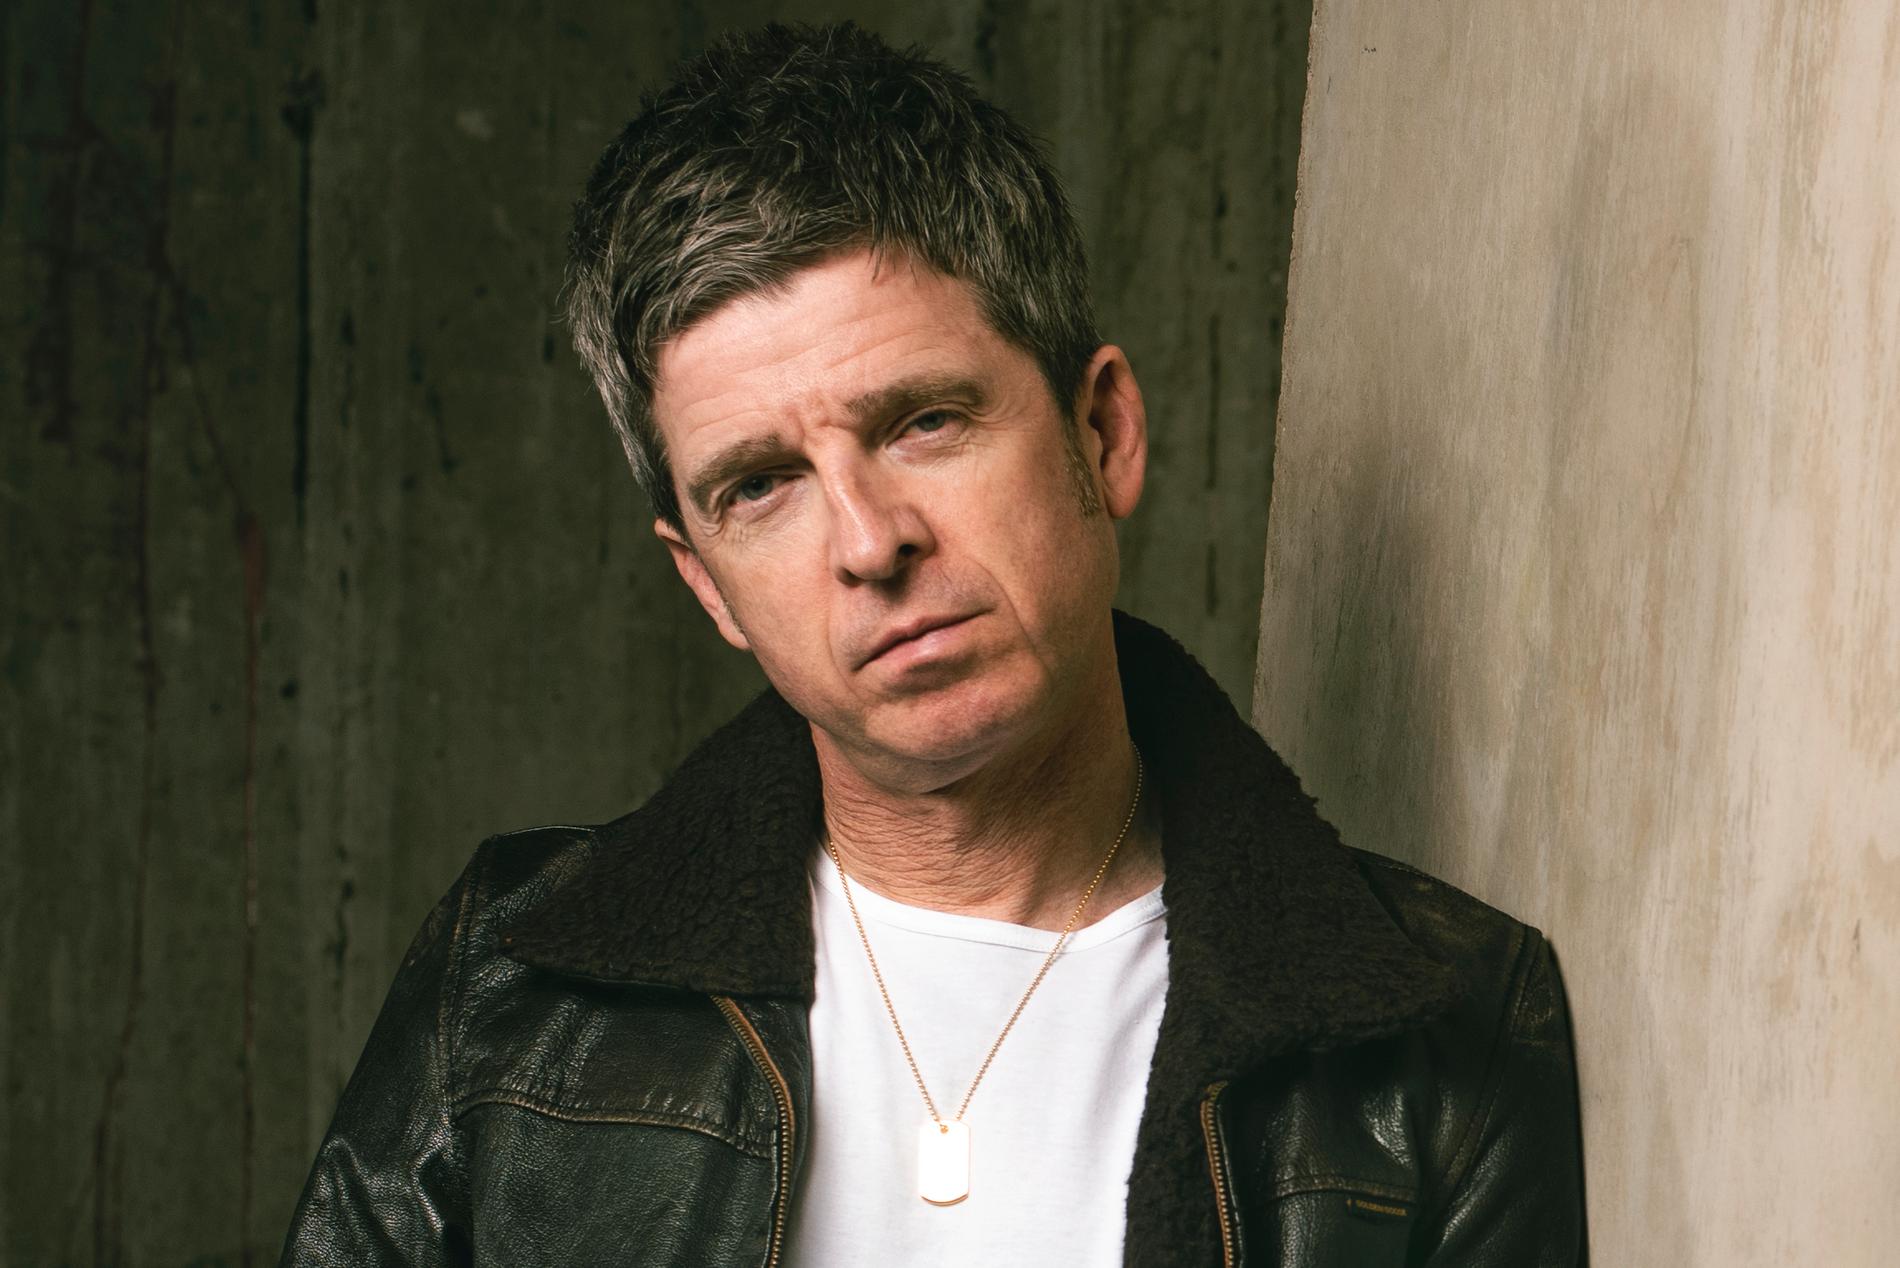 Noel Gallagher känns inspirerad på nya albumet ”Council skies”.